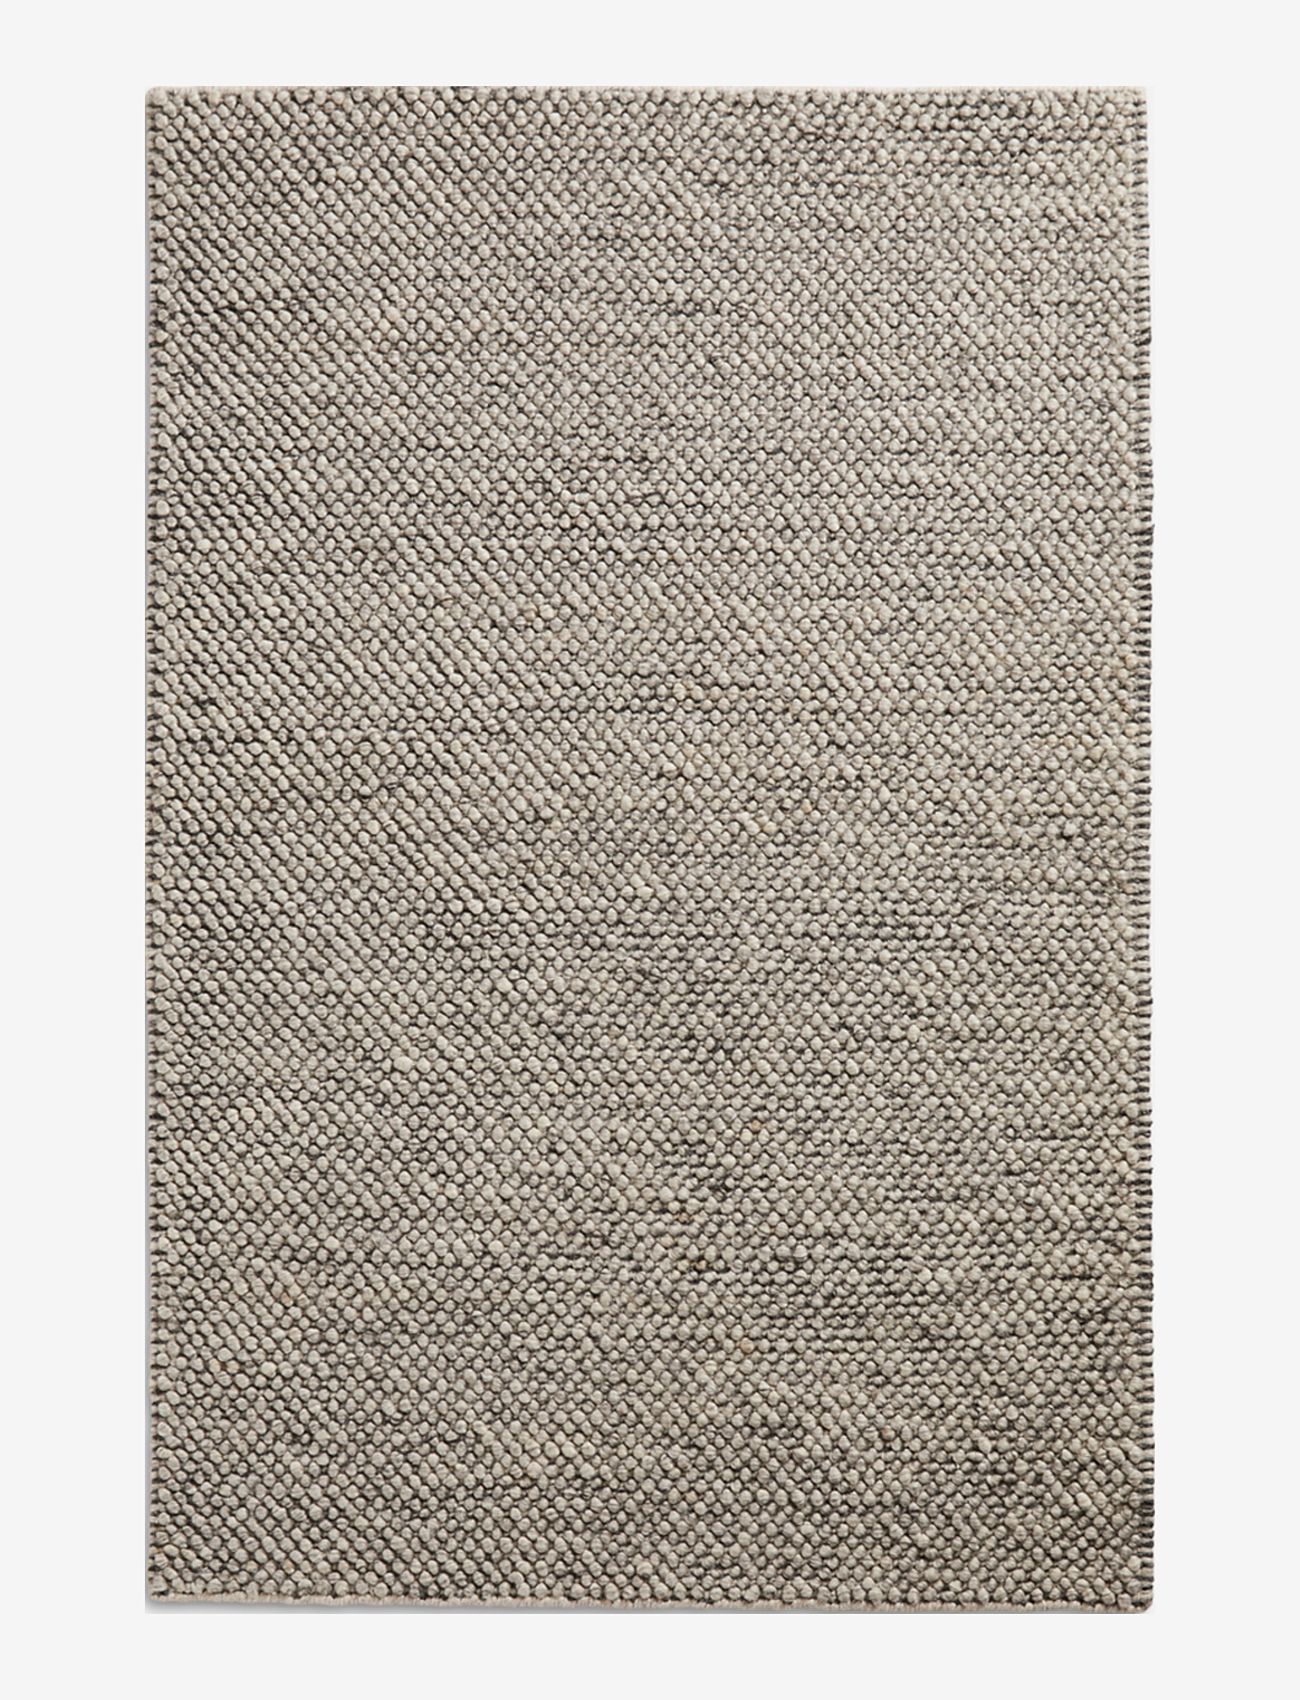 WOUD - Tact rug - katoenen tapijten & voddentapijt - dark grey - 0